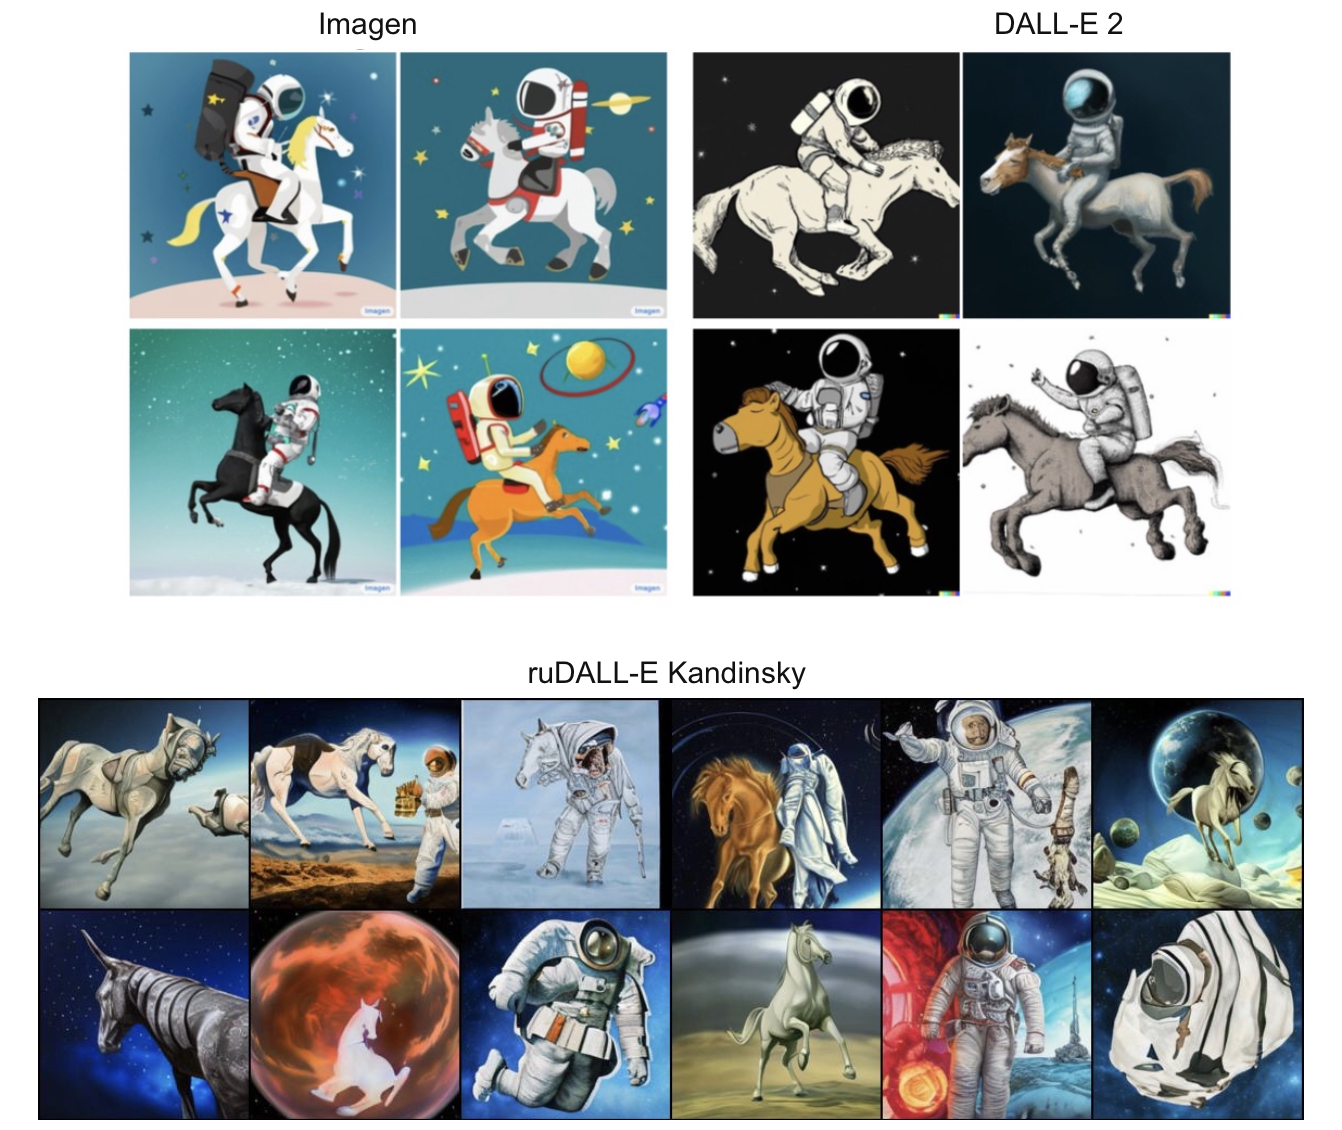 Запрос: «Лошадь, скачущая на космонавте»
Источник верхнего изображения: https://arxiv.org/pdf/2205.11487.pdf